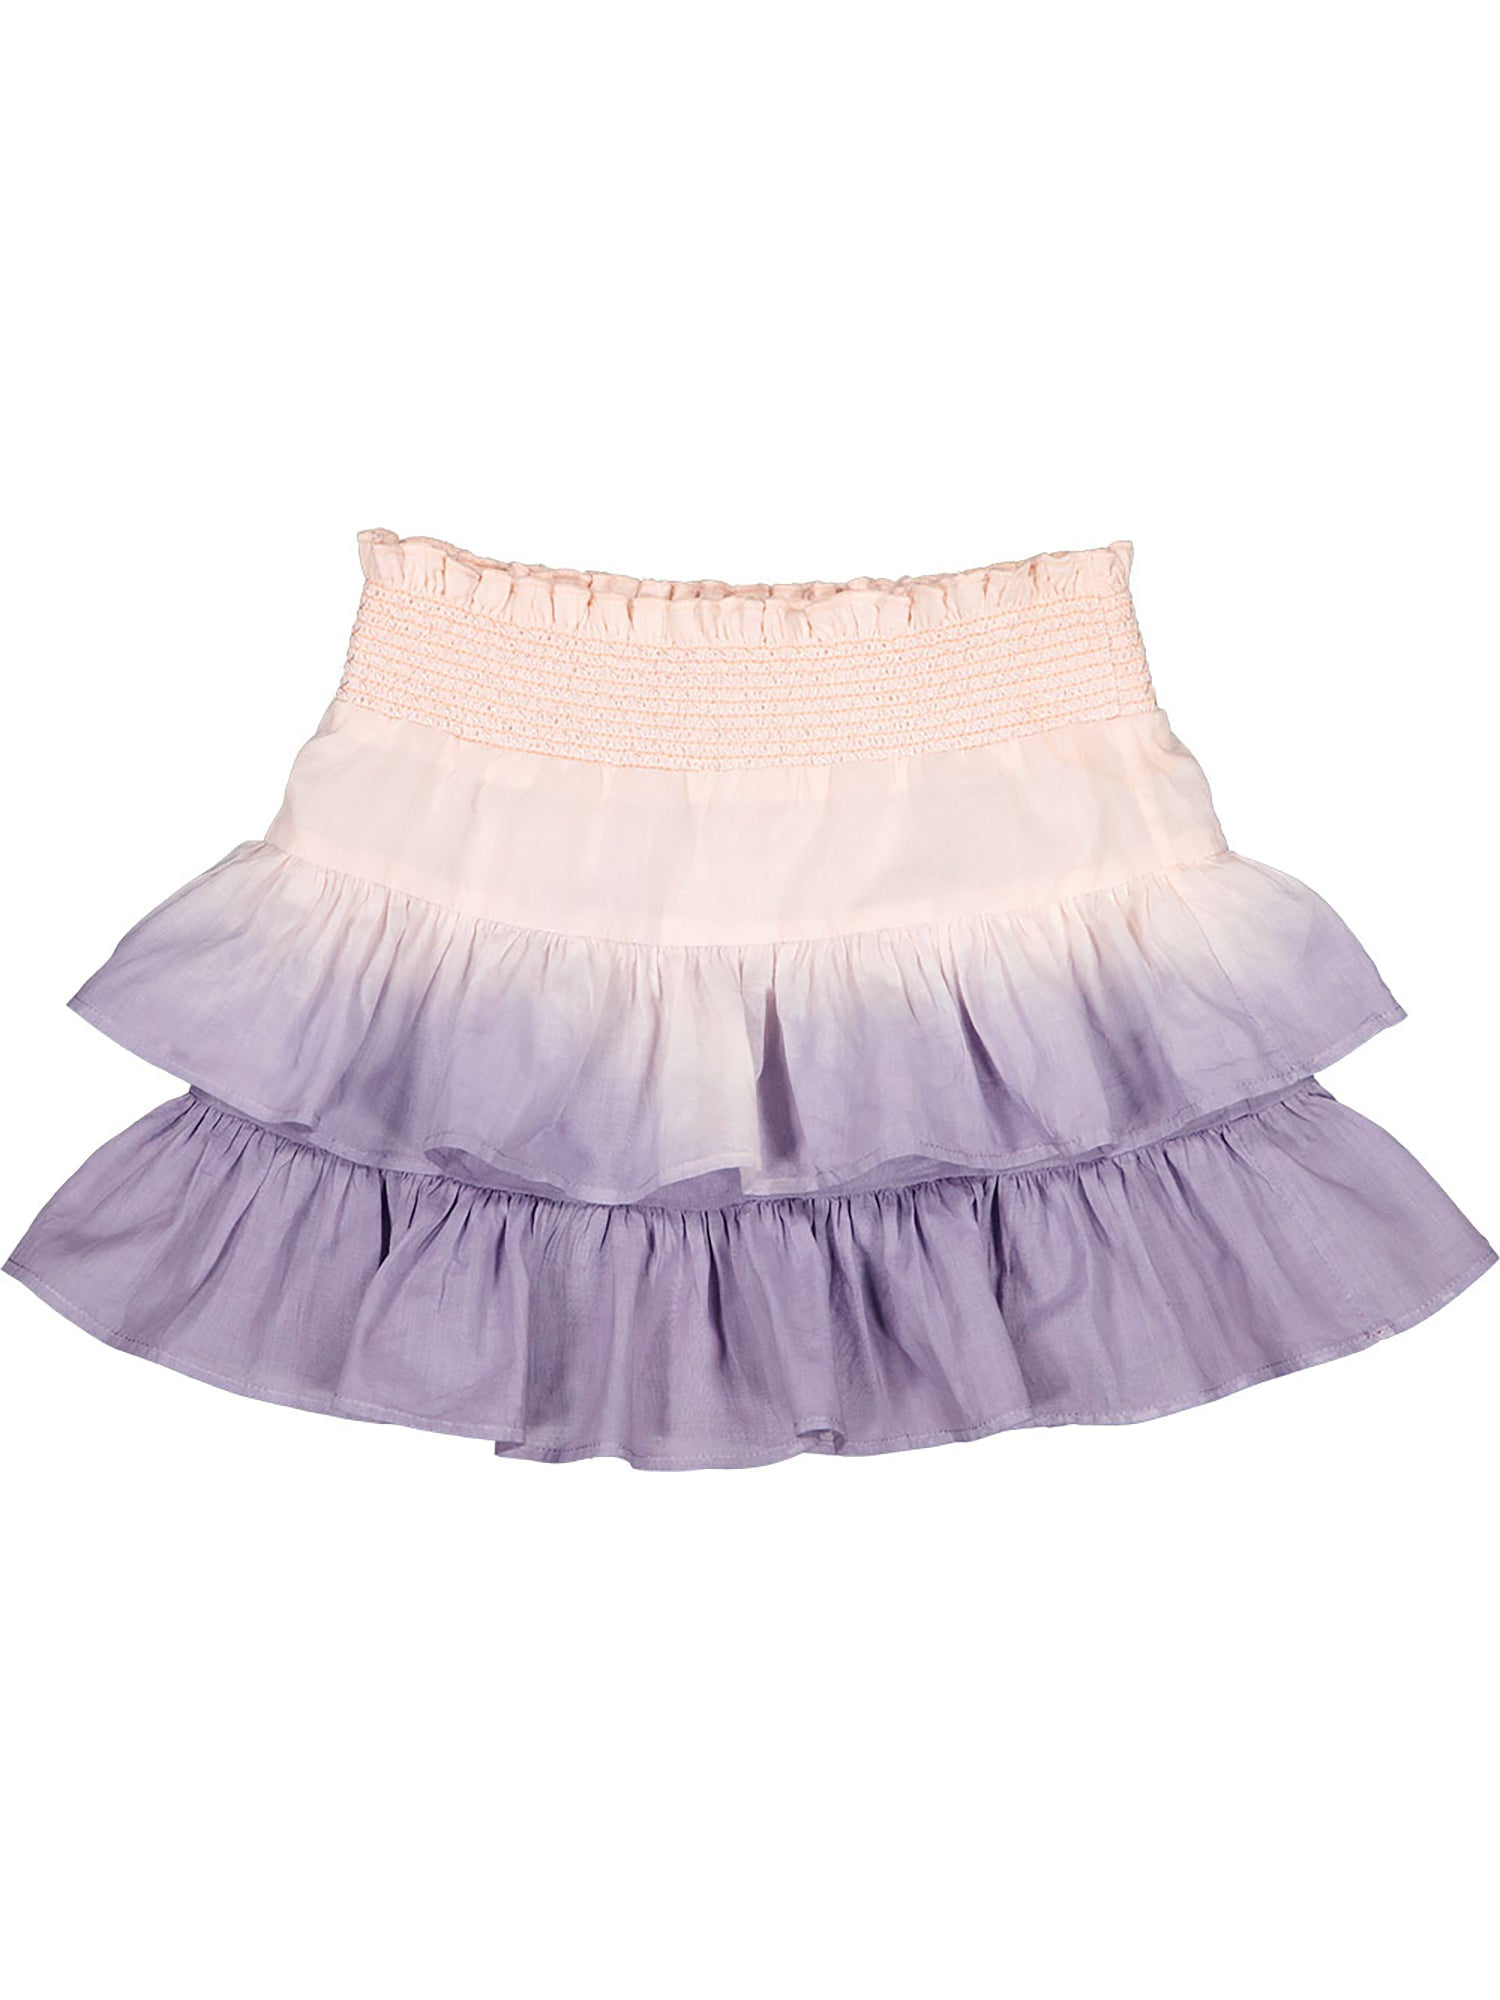 Louis Louise Lena Dip Dye Skirt - Walmart.com